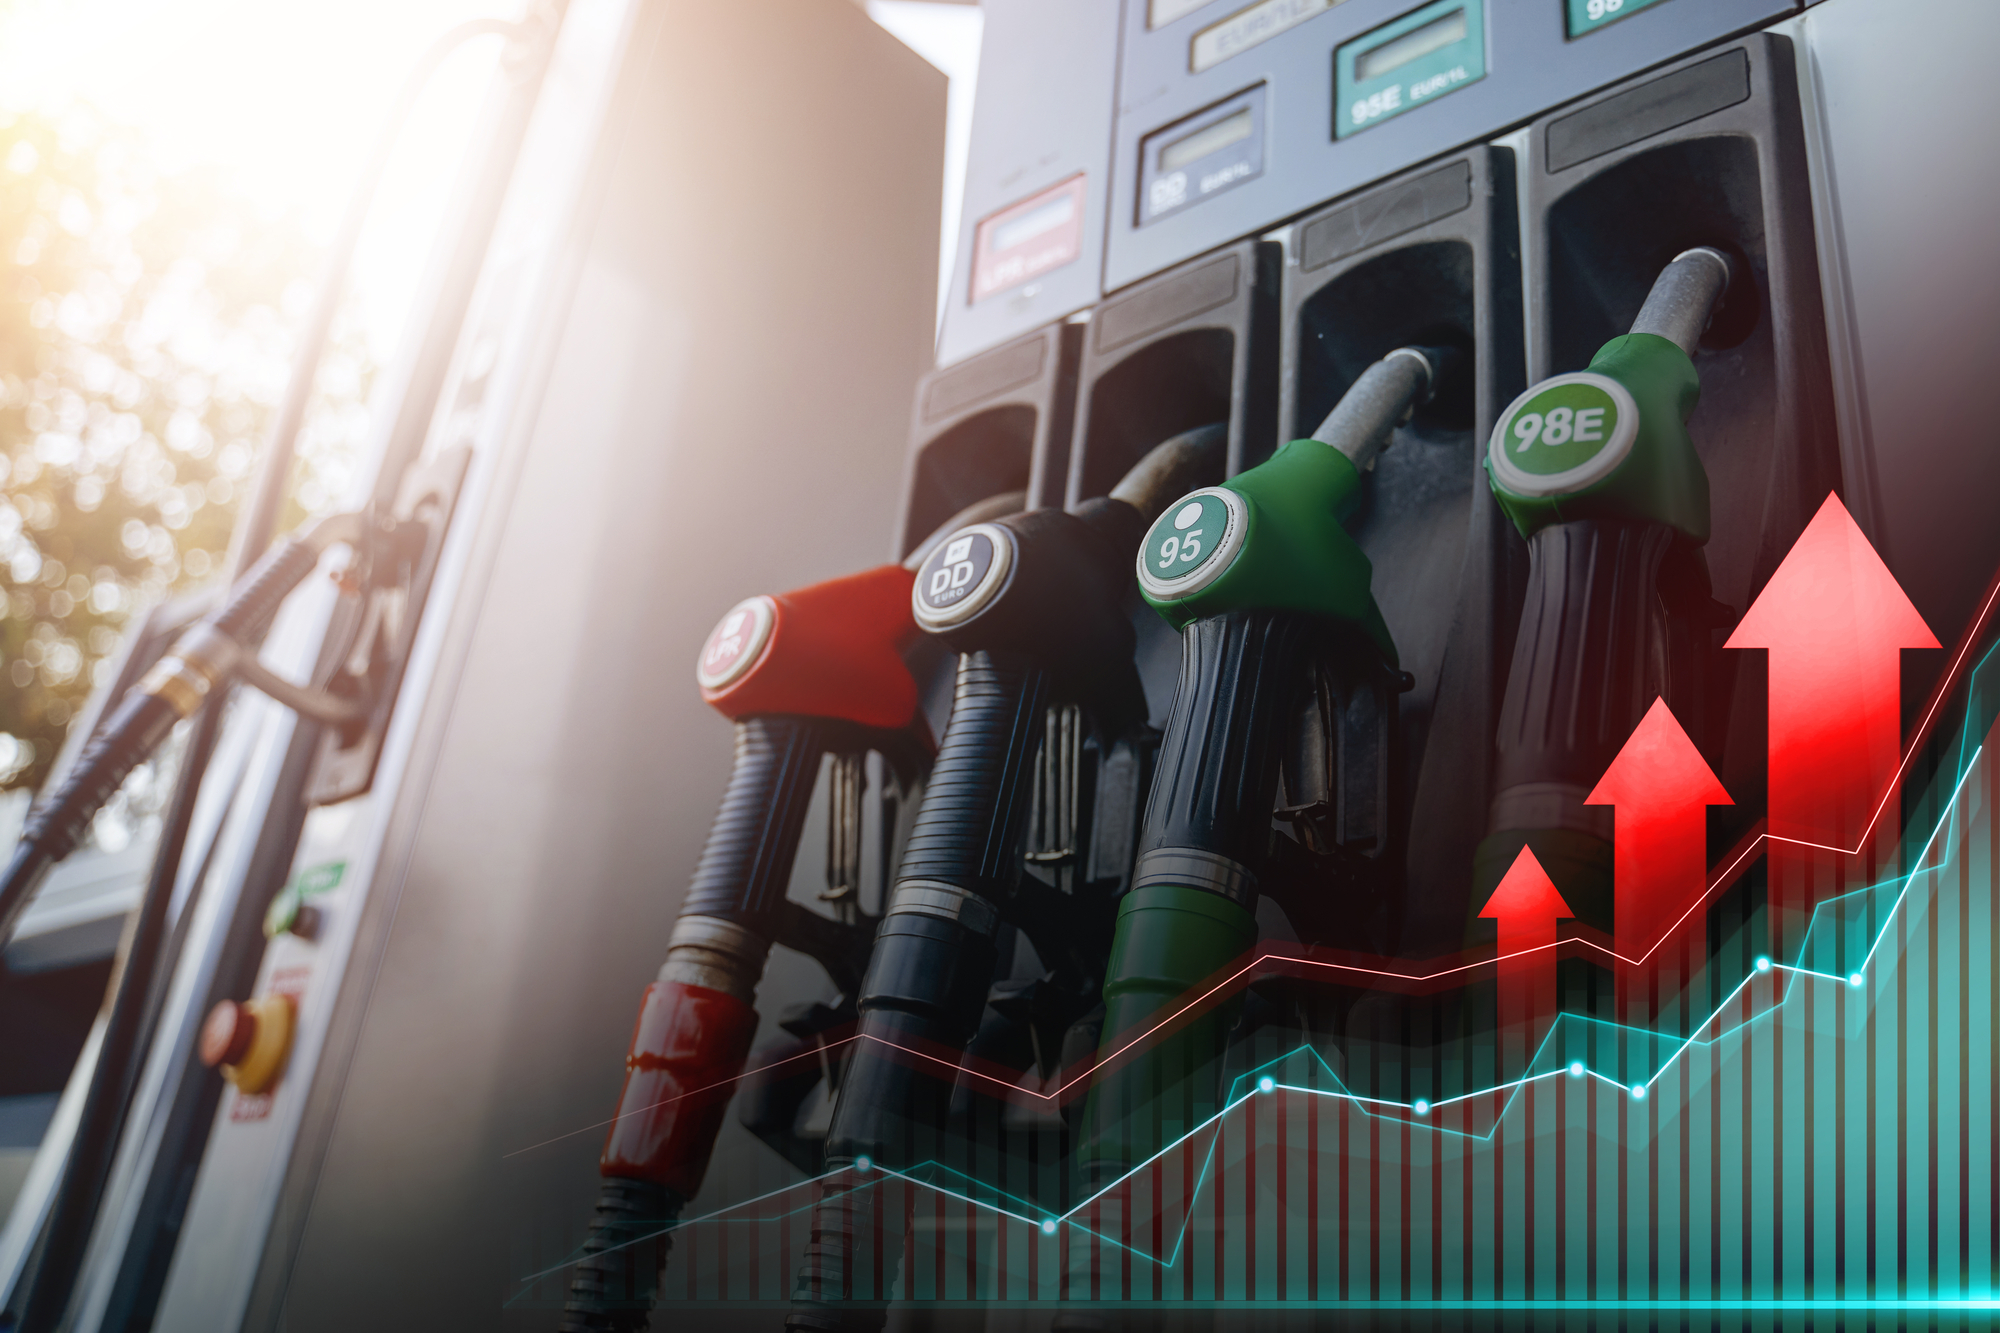 Expertul economic Viorel Gîrbu pentru INFODEBIT: Deși piața produselor petroliere a crescut cu 64%, numărul operatorilor activi pe această piață este în scădere